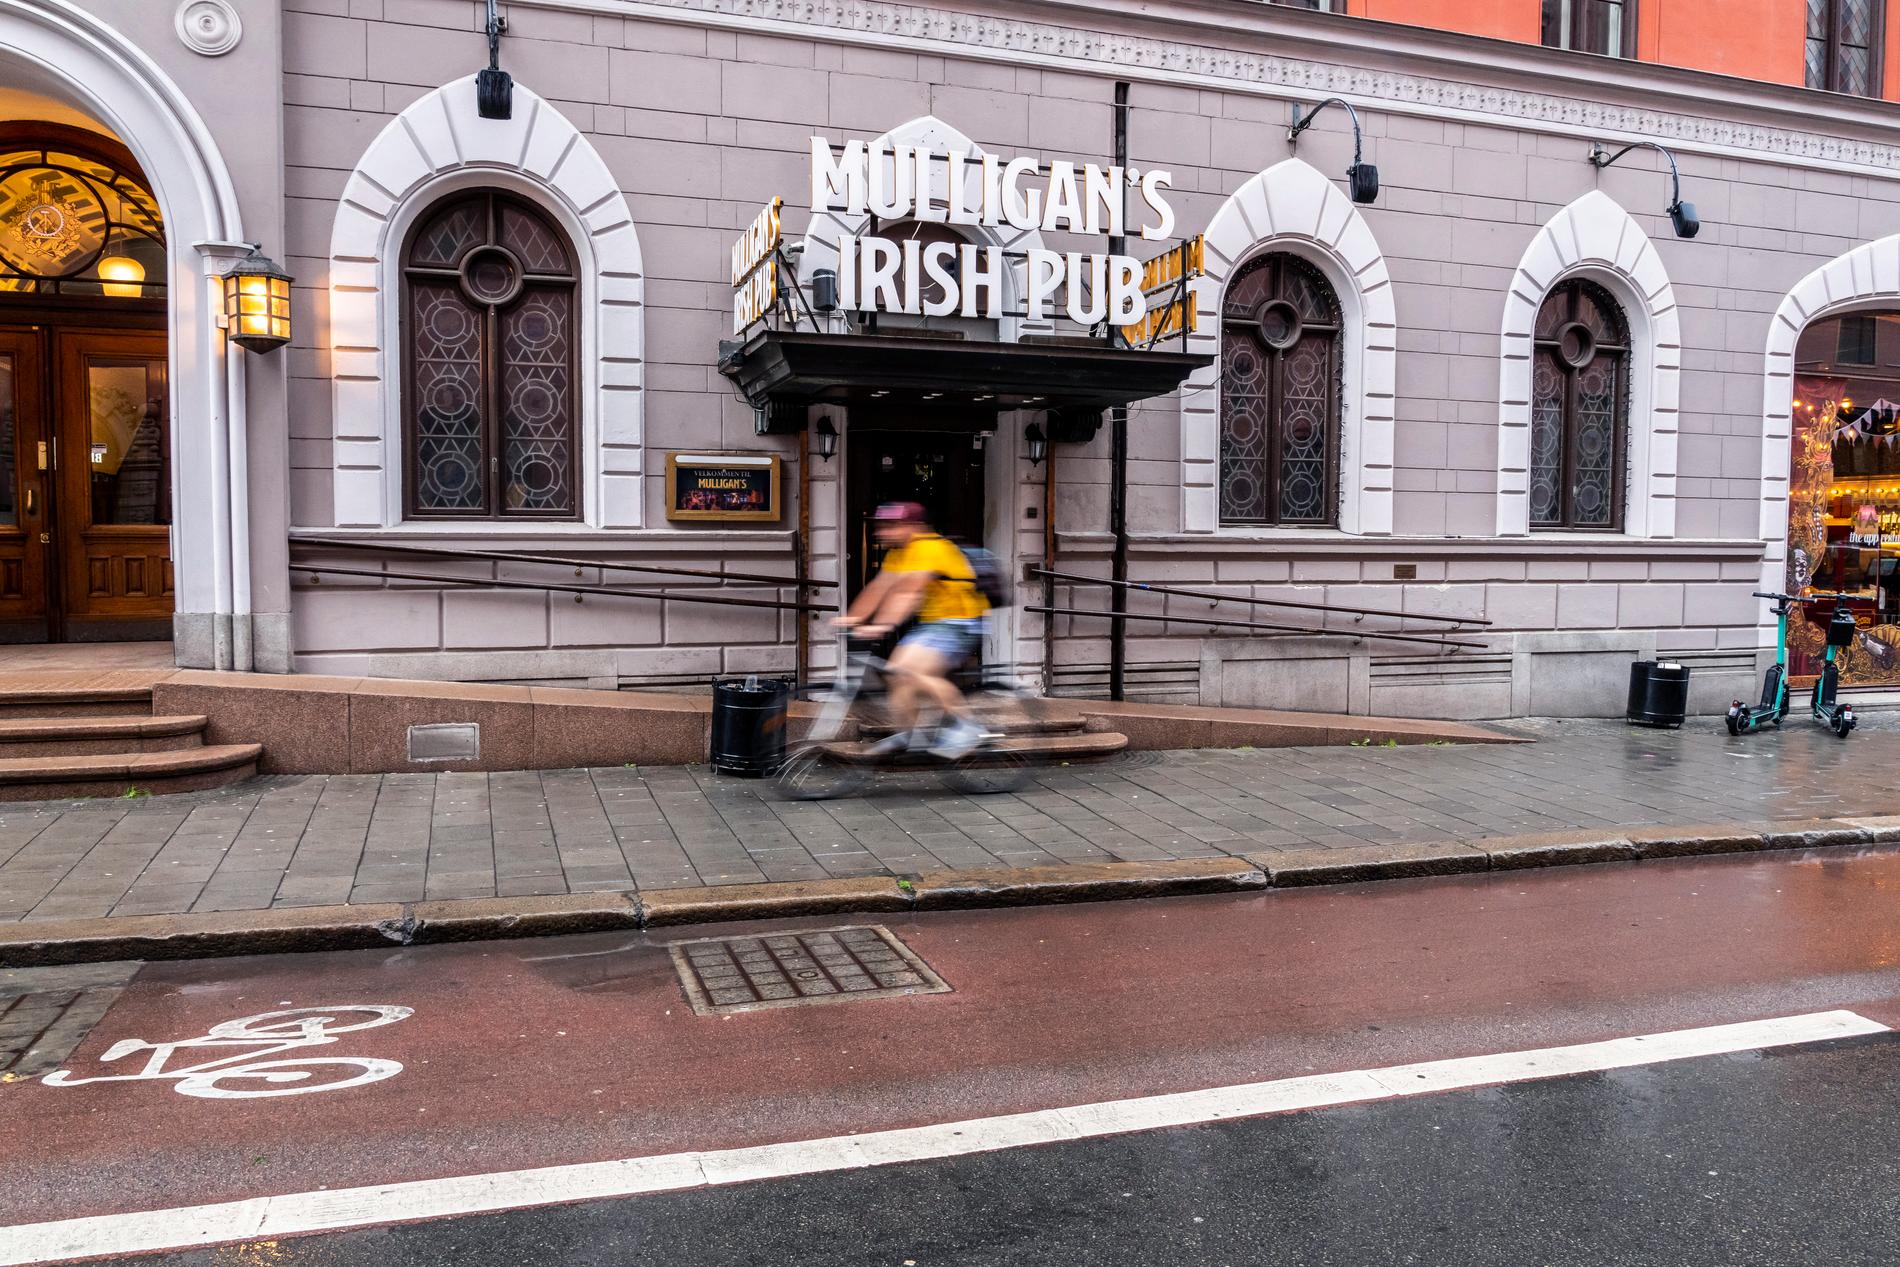 Här utanför Mulligans Irish Pub på Kristian IV s gate 4 övermannades gärningspersonen av allmänheten. Kort därefter greps han på platsen.